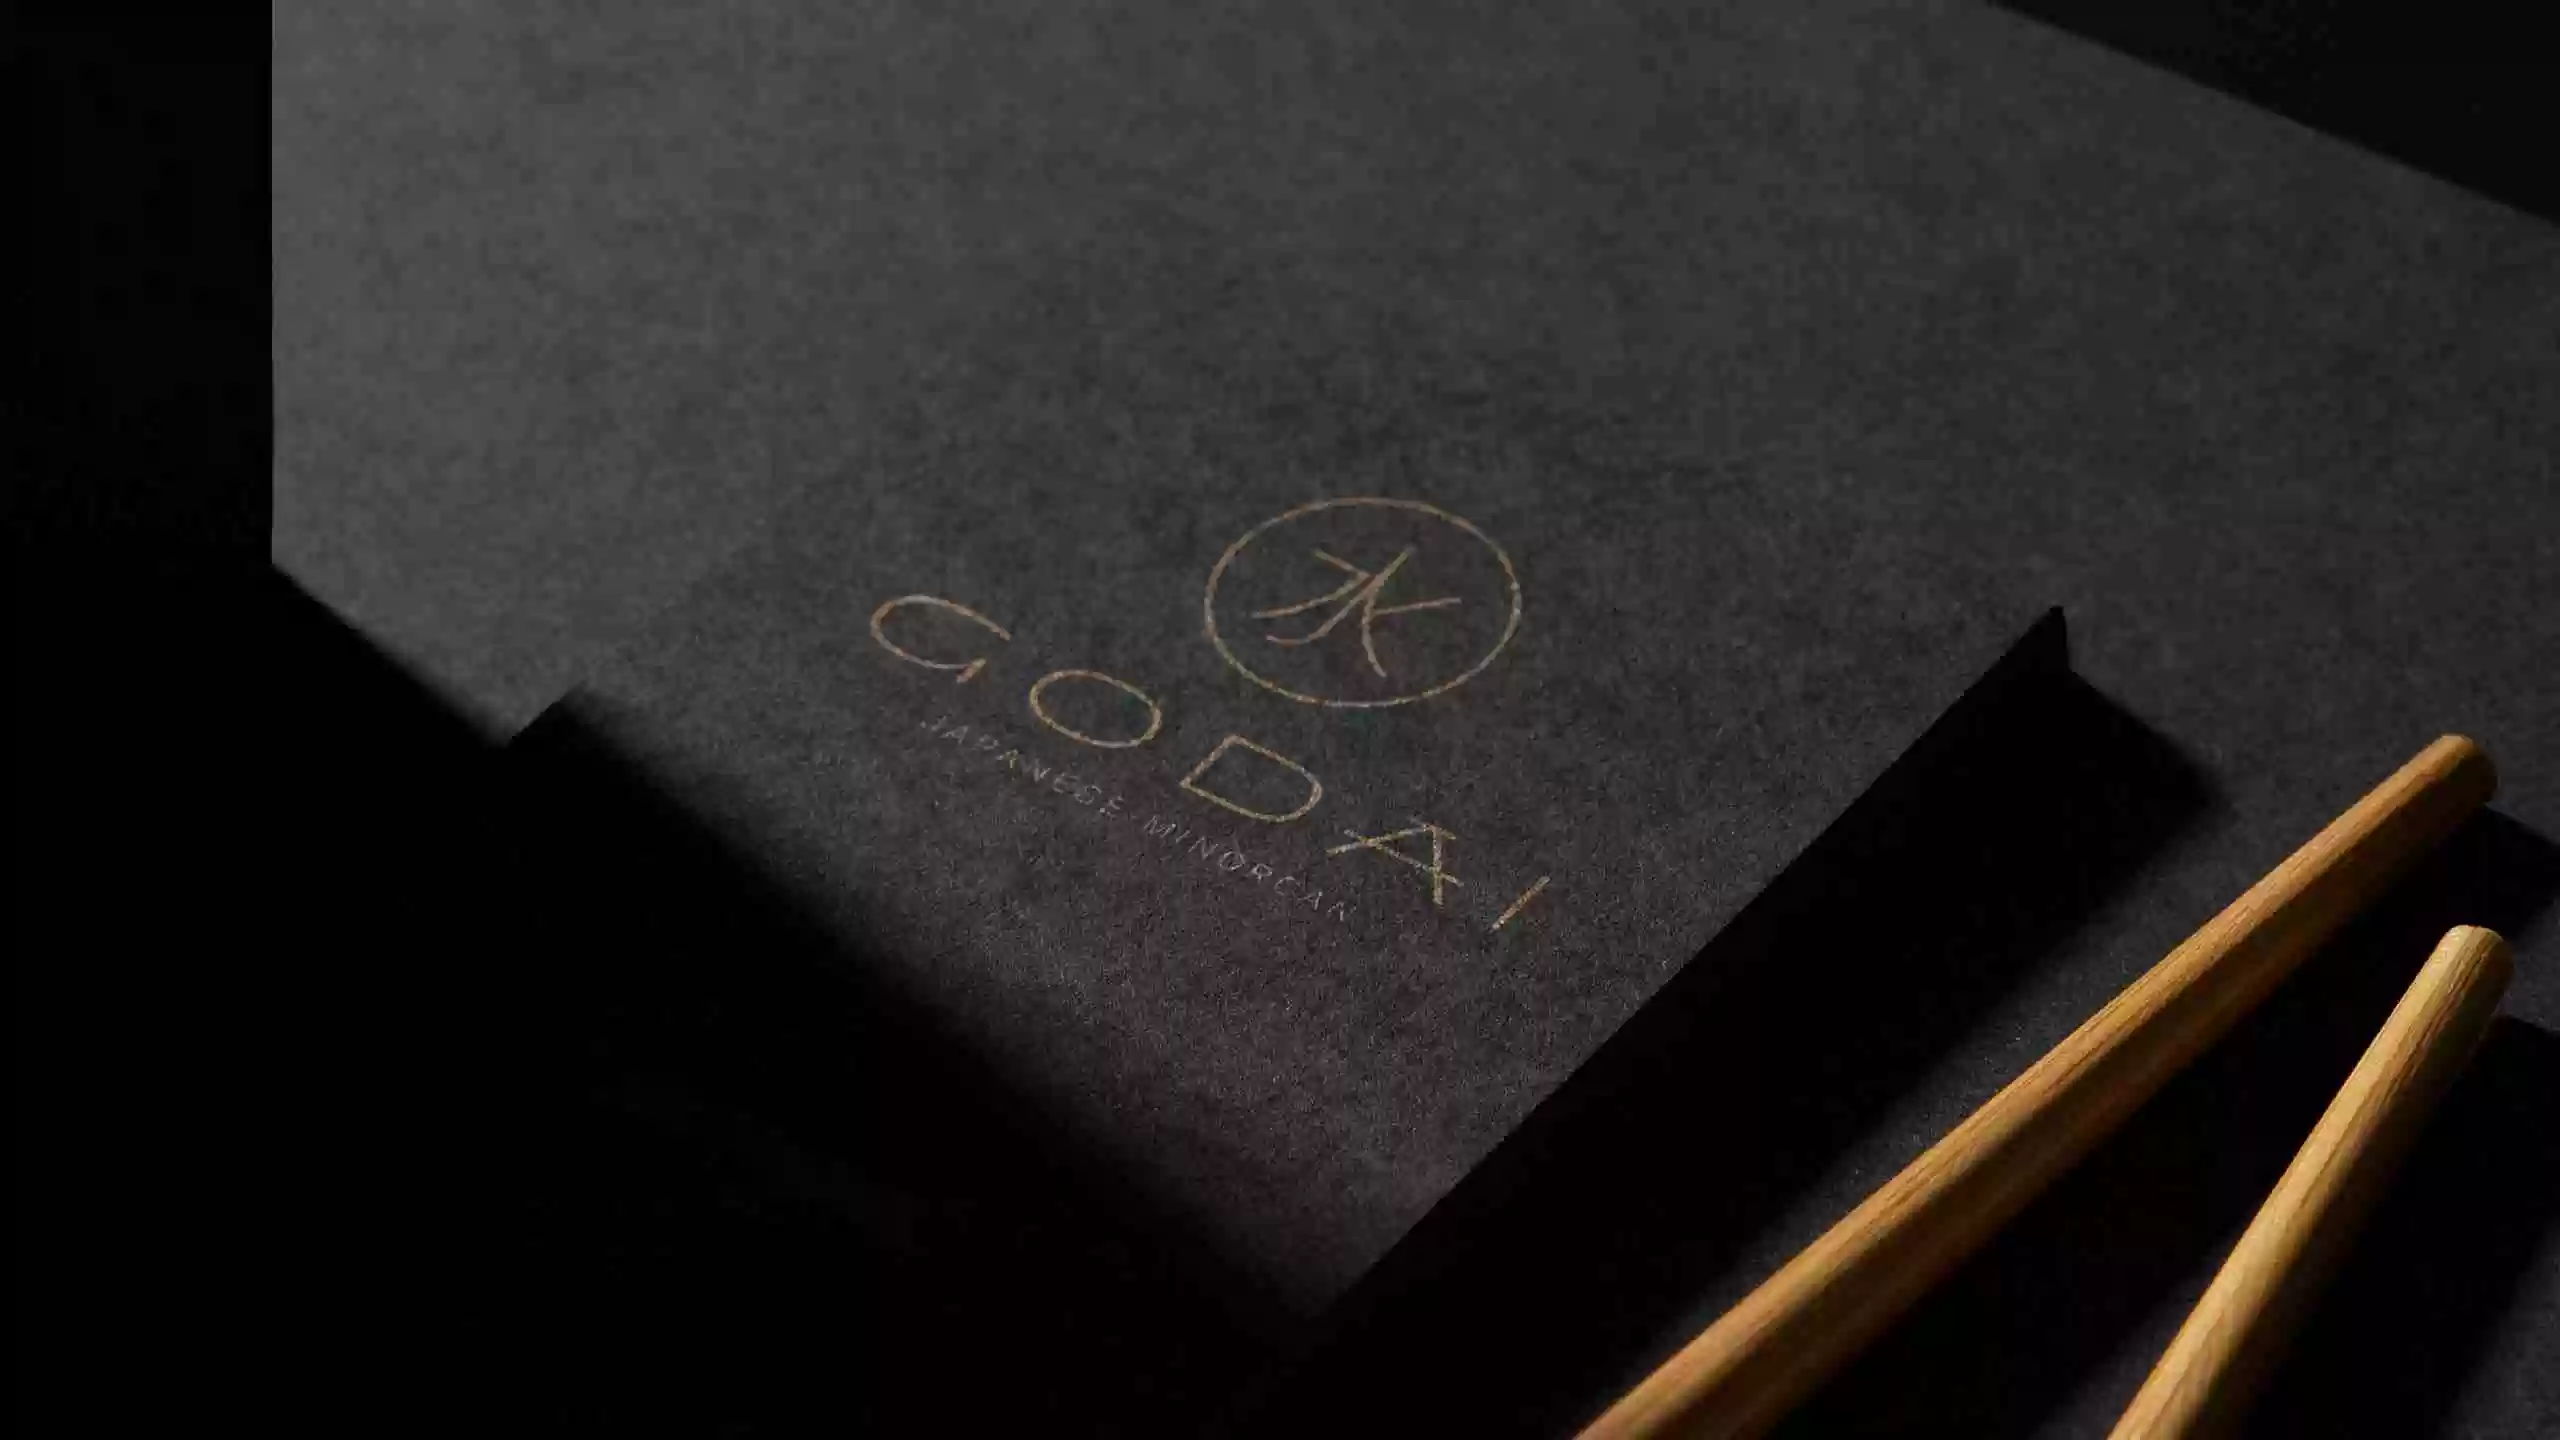 Diseño de logotipo para restaurante Godai Menorca